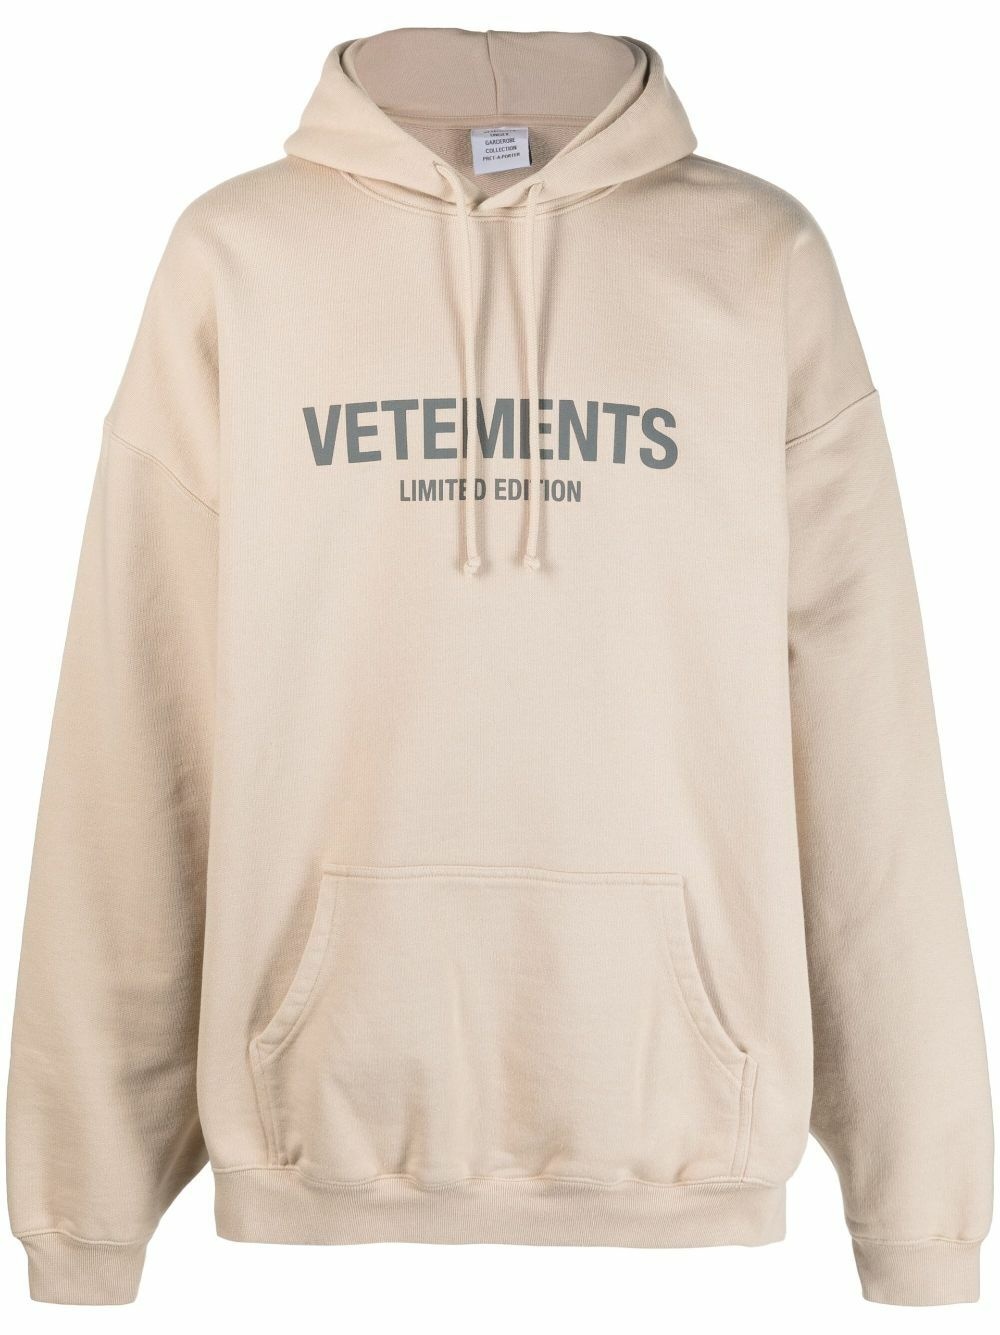 VETEMENTS - Sweatshirt With Logo Vetements